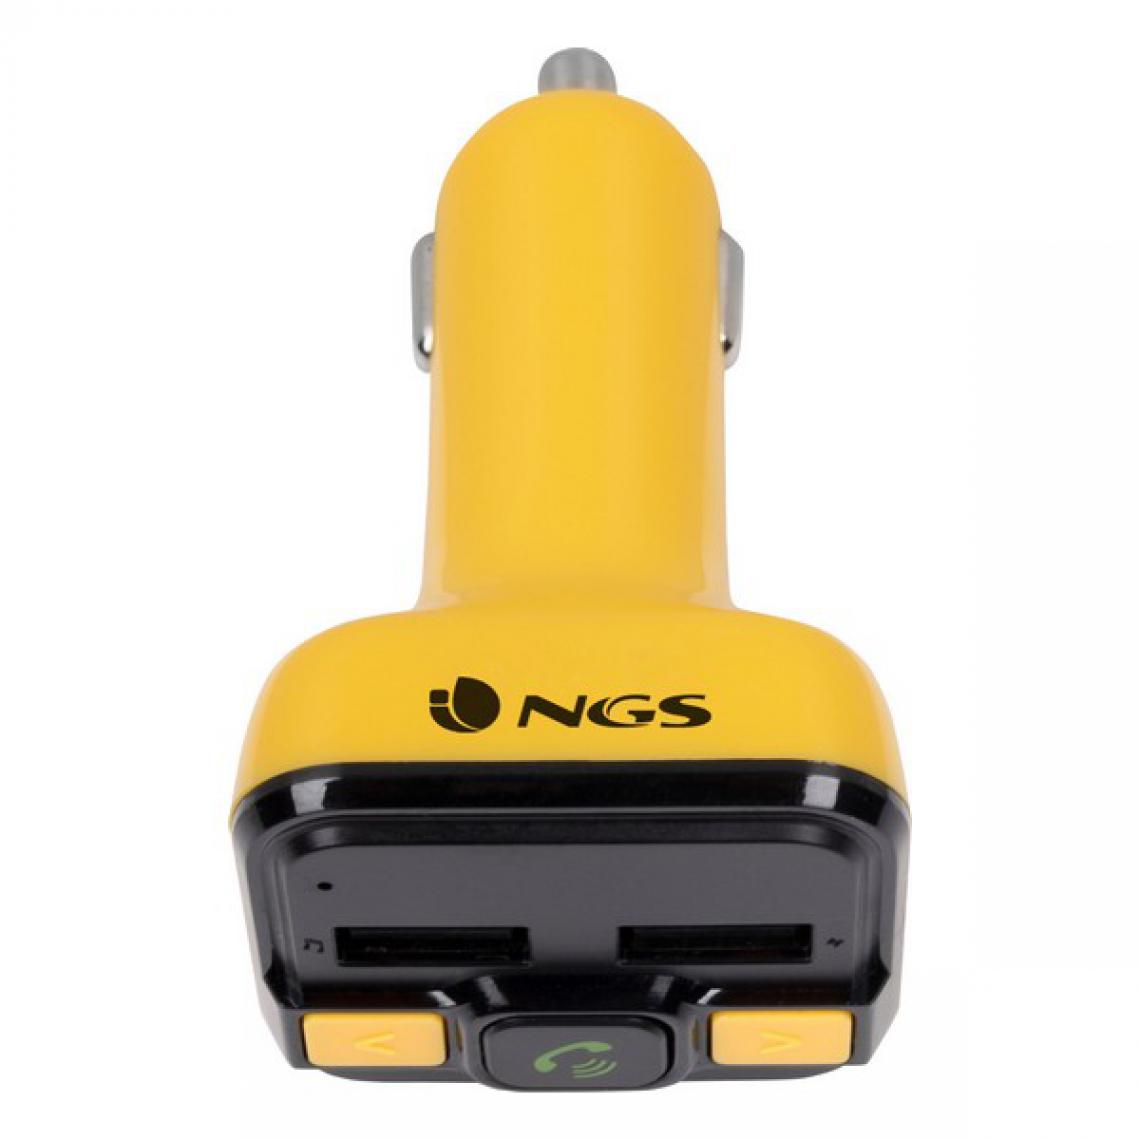 Ngs - Lecteur MP3 et émetteur FM Bluetooth pour voiture NGS Spark BT Curry 2.4A Jaune - Passerelle Multimédia